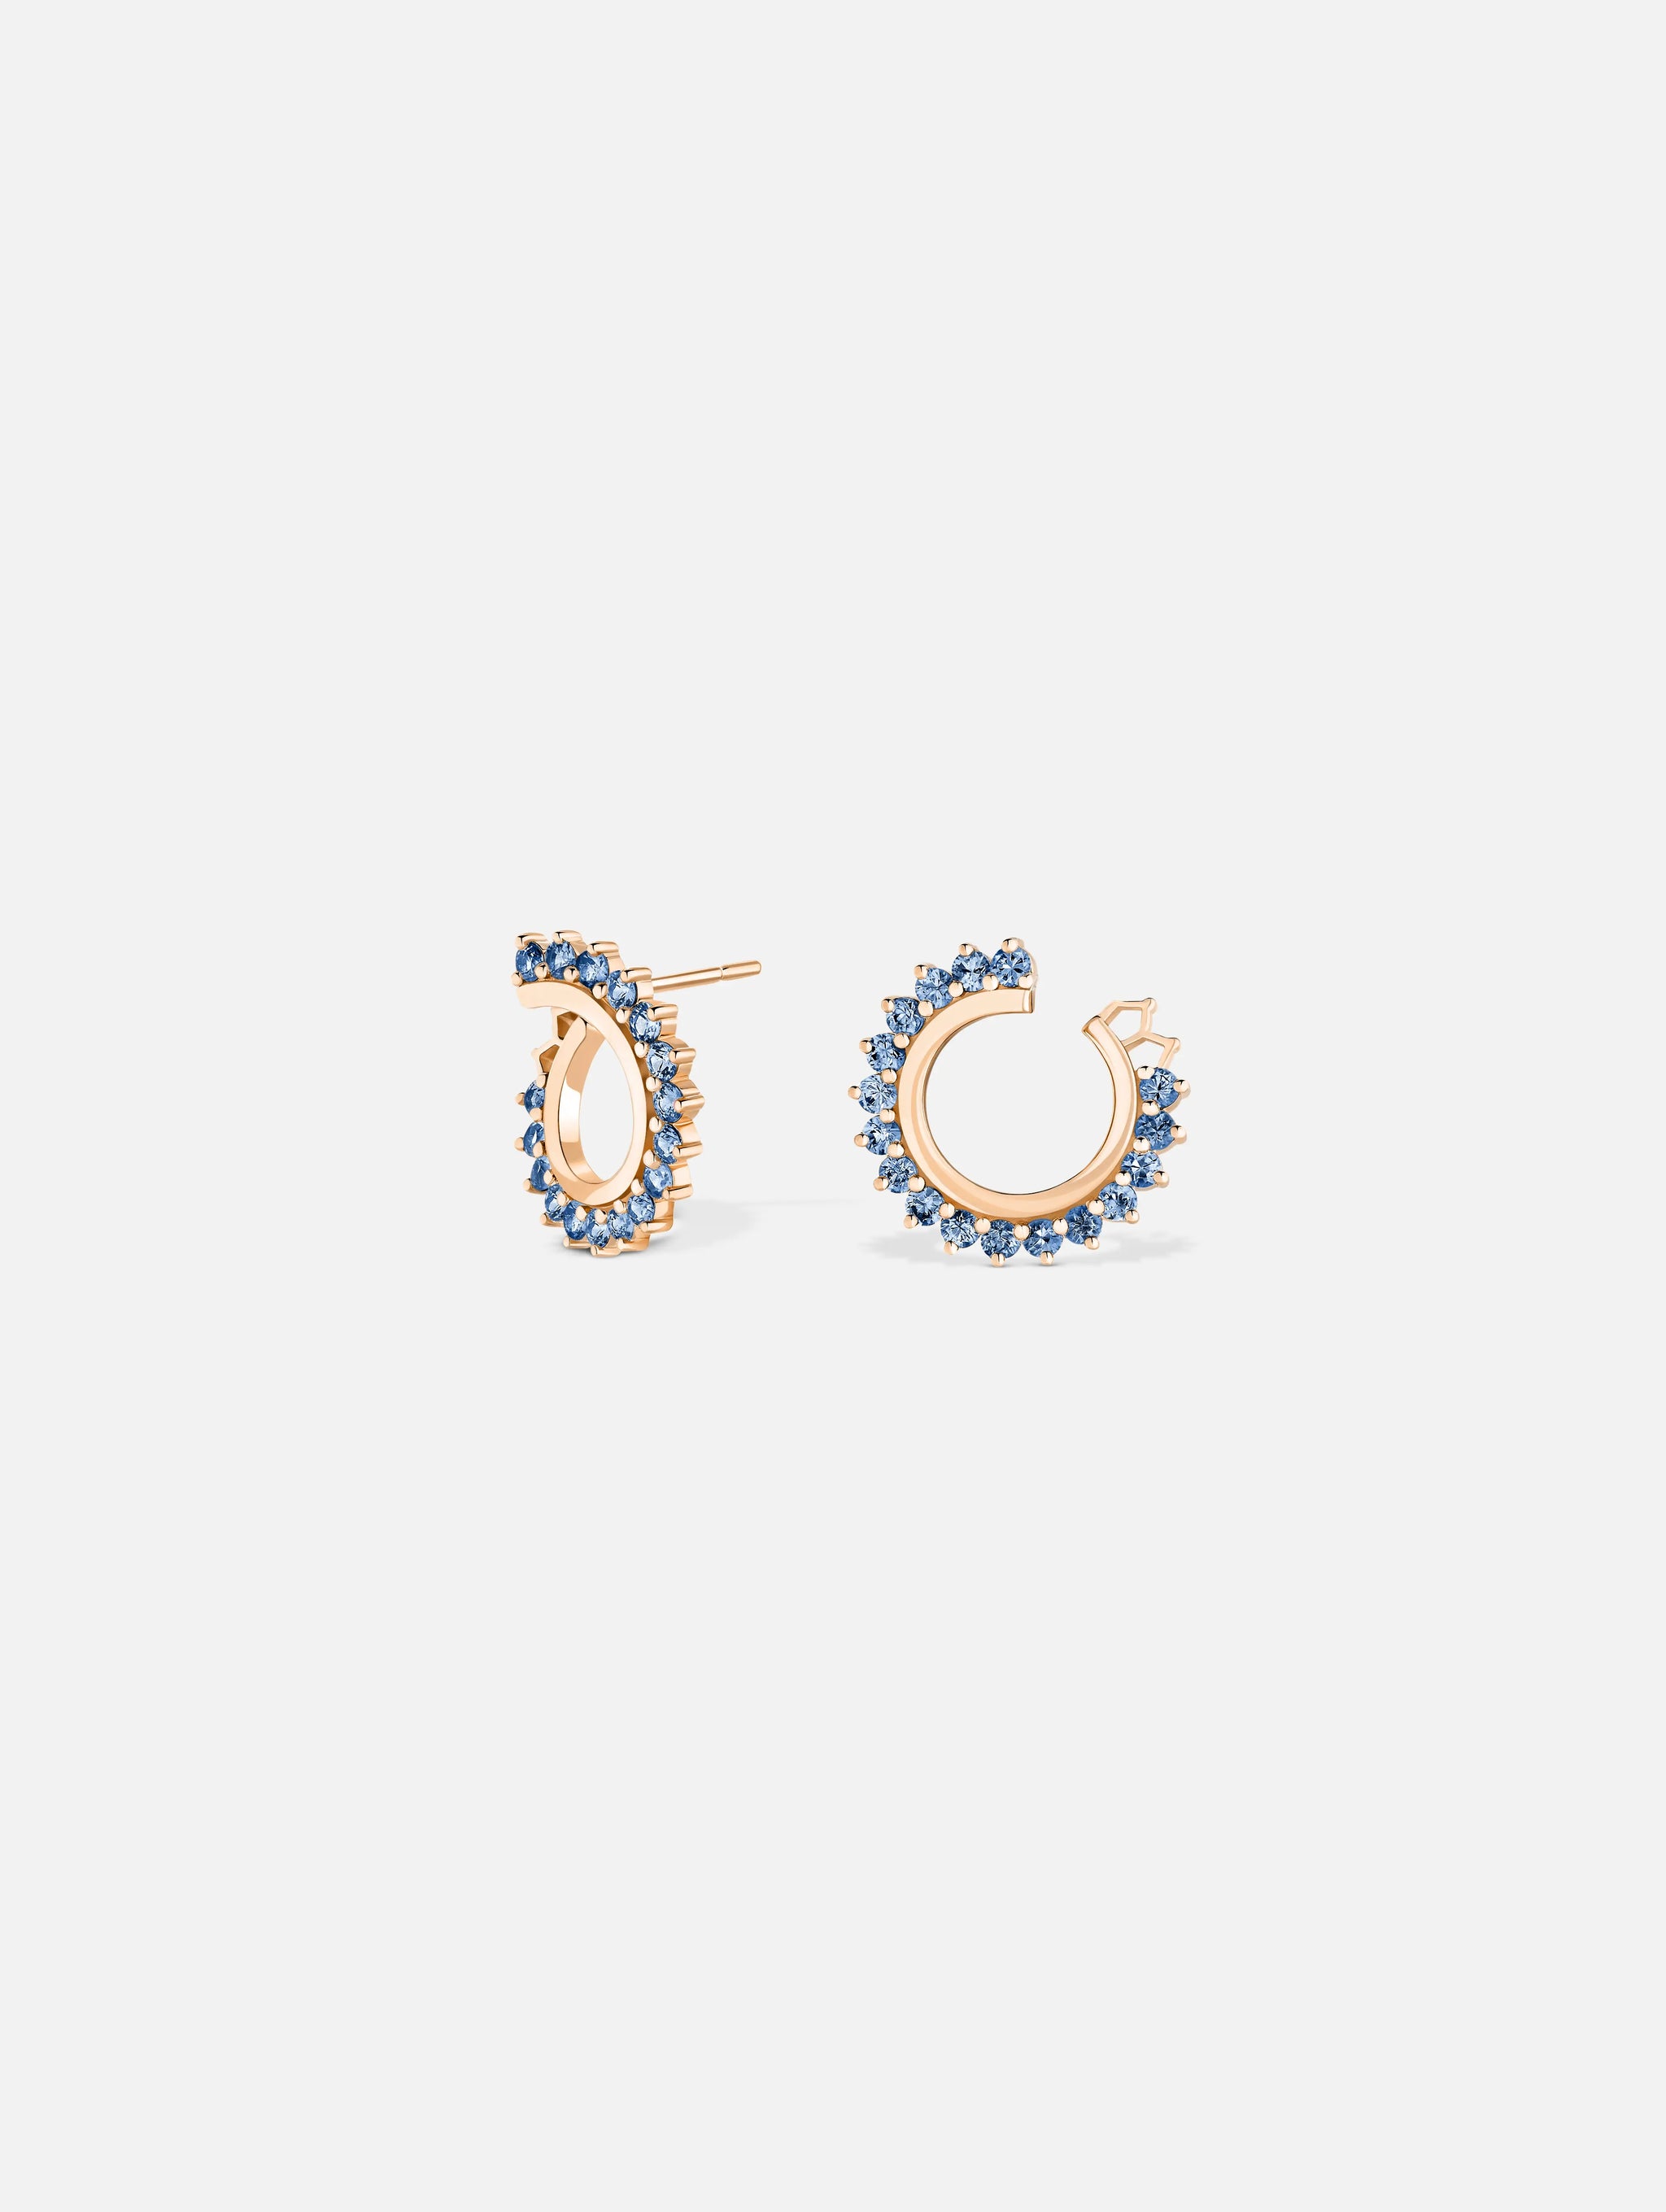 Boucles d'oreilles Vendôme Saphir Bleu en Or Rose - 1 - Nouvel Heritage